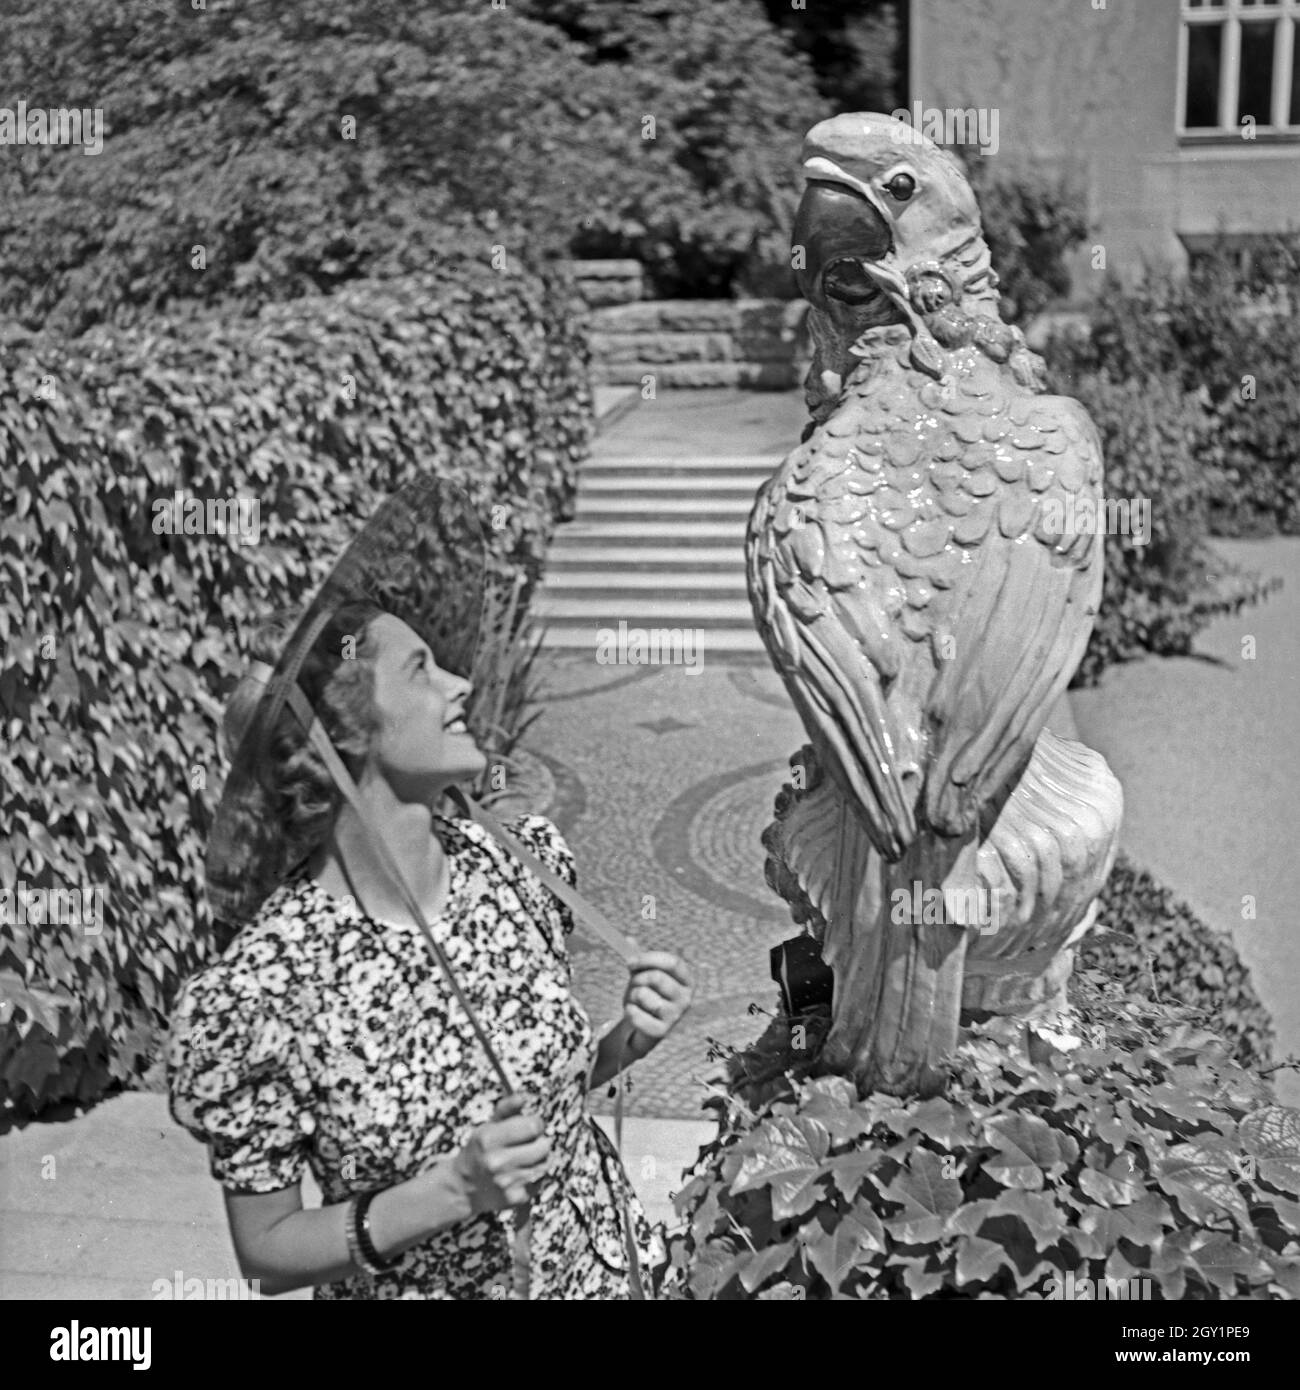 Eine junge Frau bei einer Papageienstatue in einem Park, Deutschland 1930er Jahre. A young woman and a sculpture of a parrot at a public garden, Germany 1930s. Stock Photo